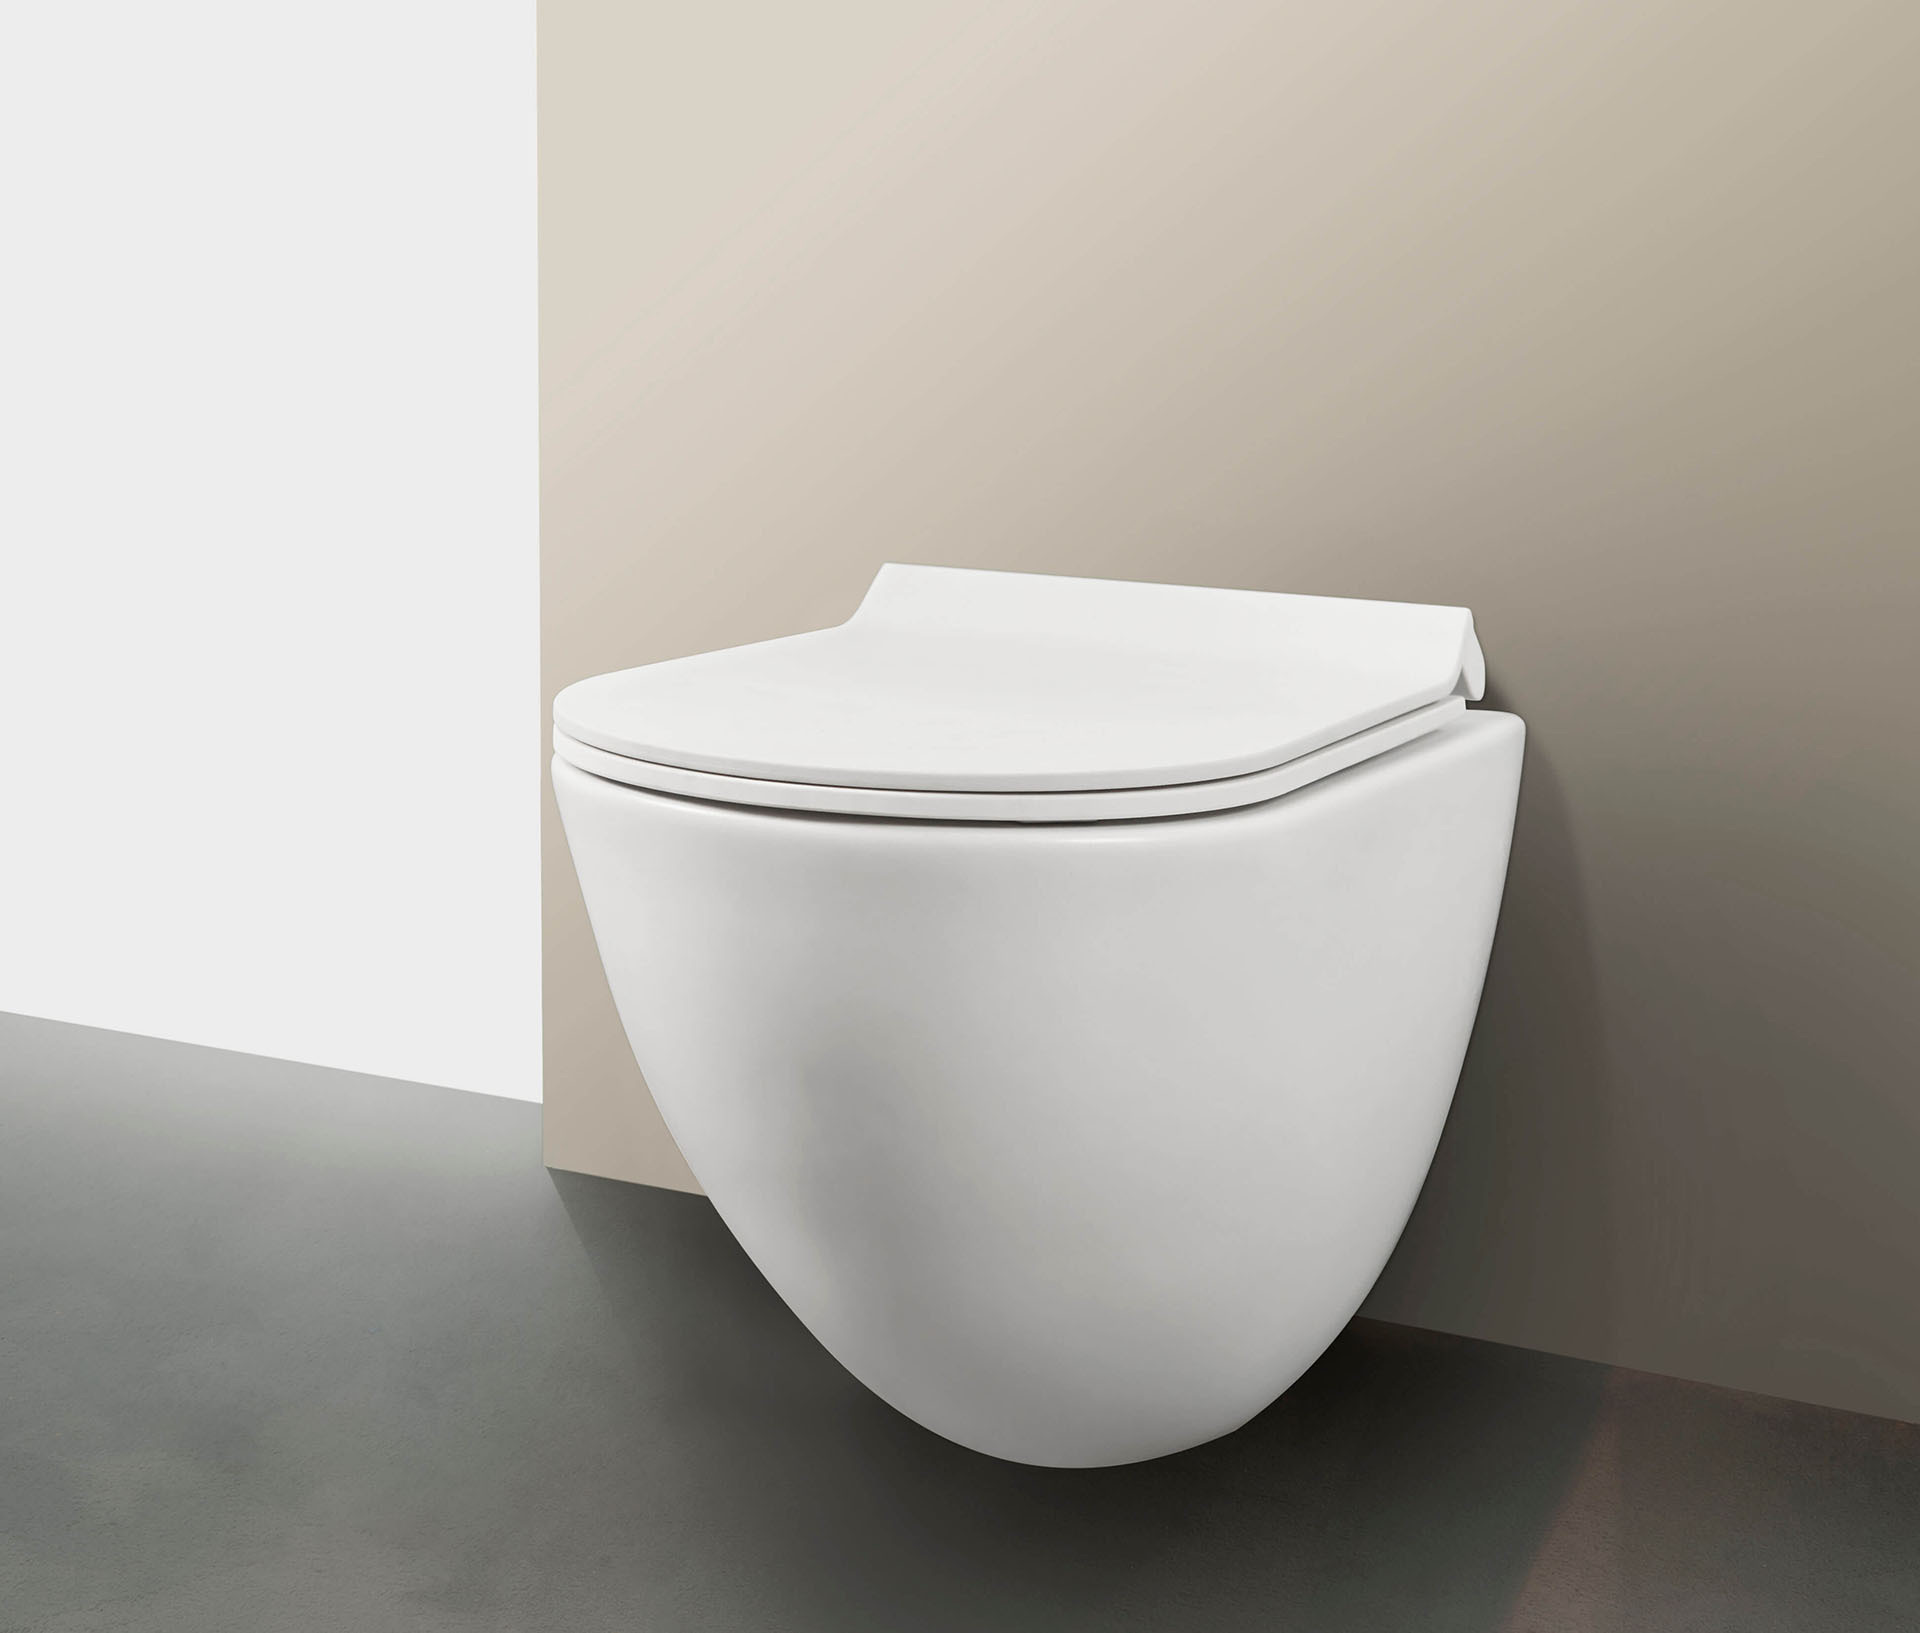 Wonennl-Detremmerie-toilet-new-wit-rimless_2021-02-24-153159.jpg